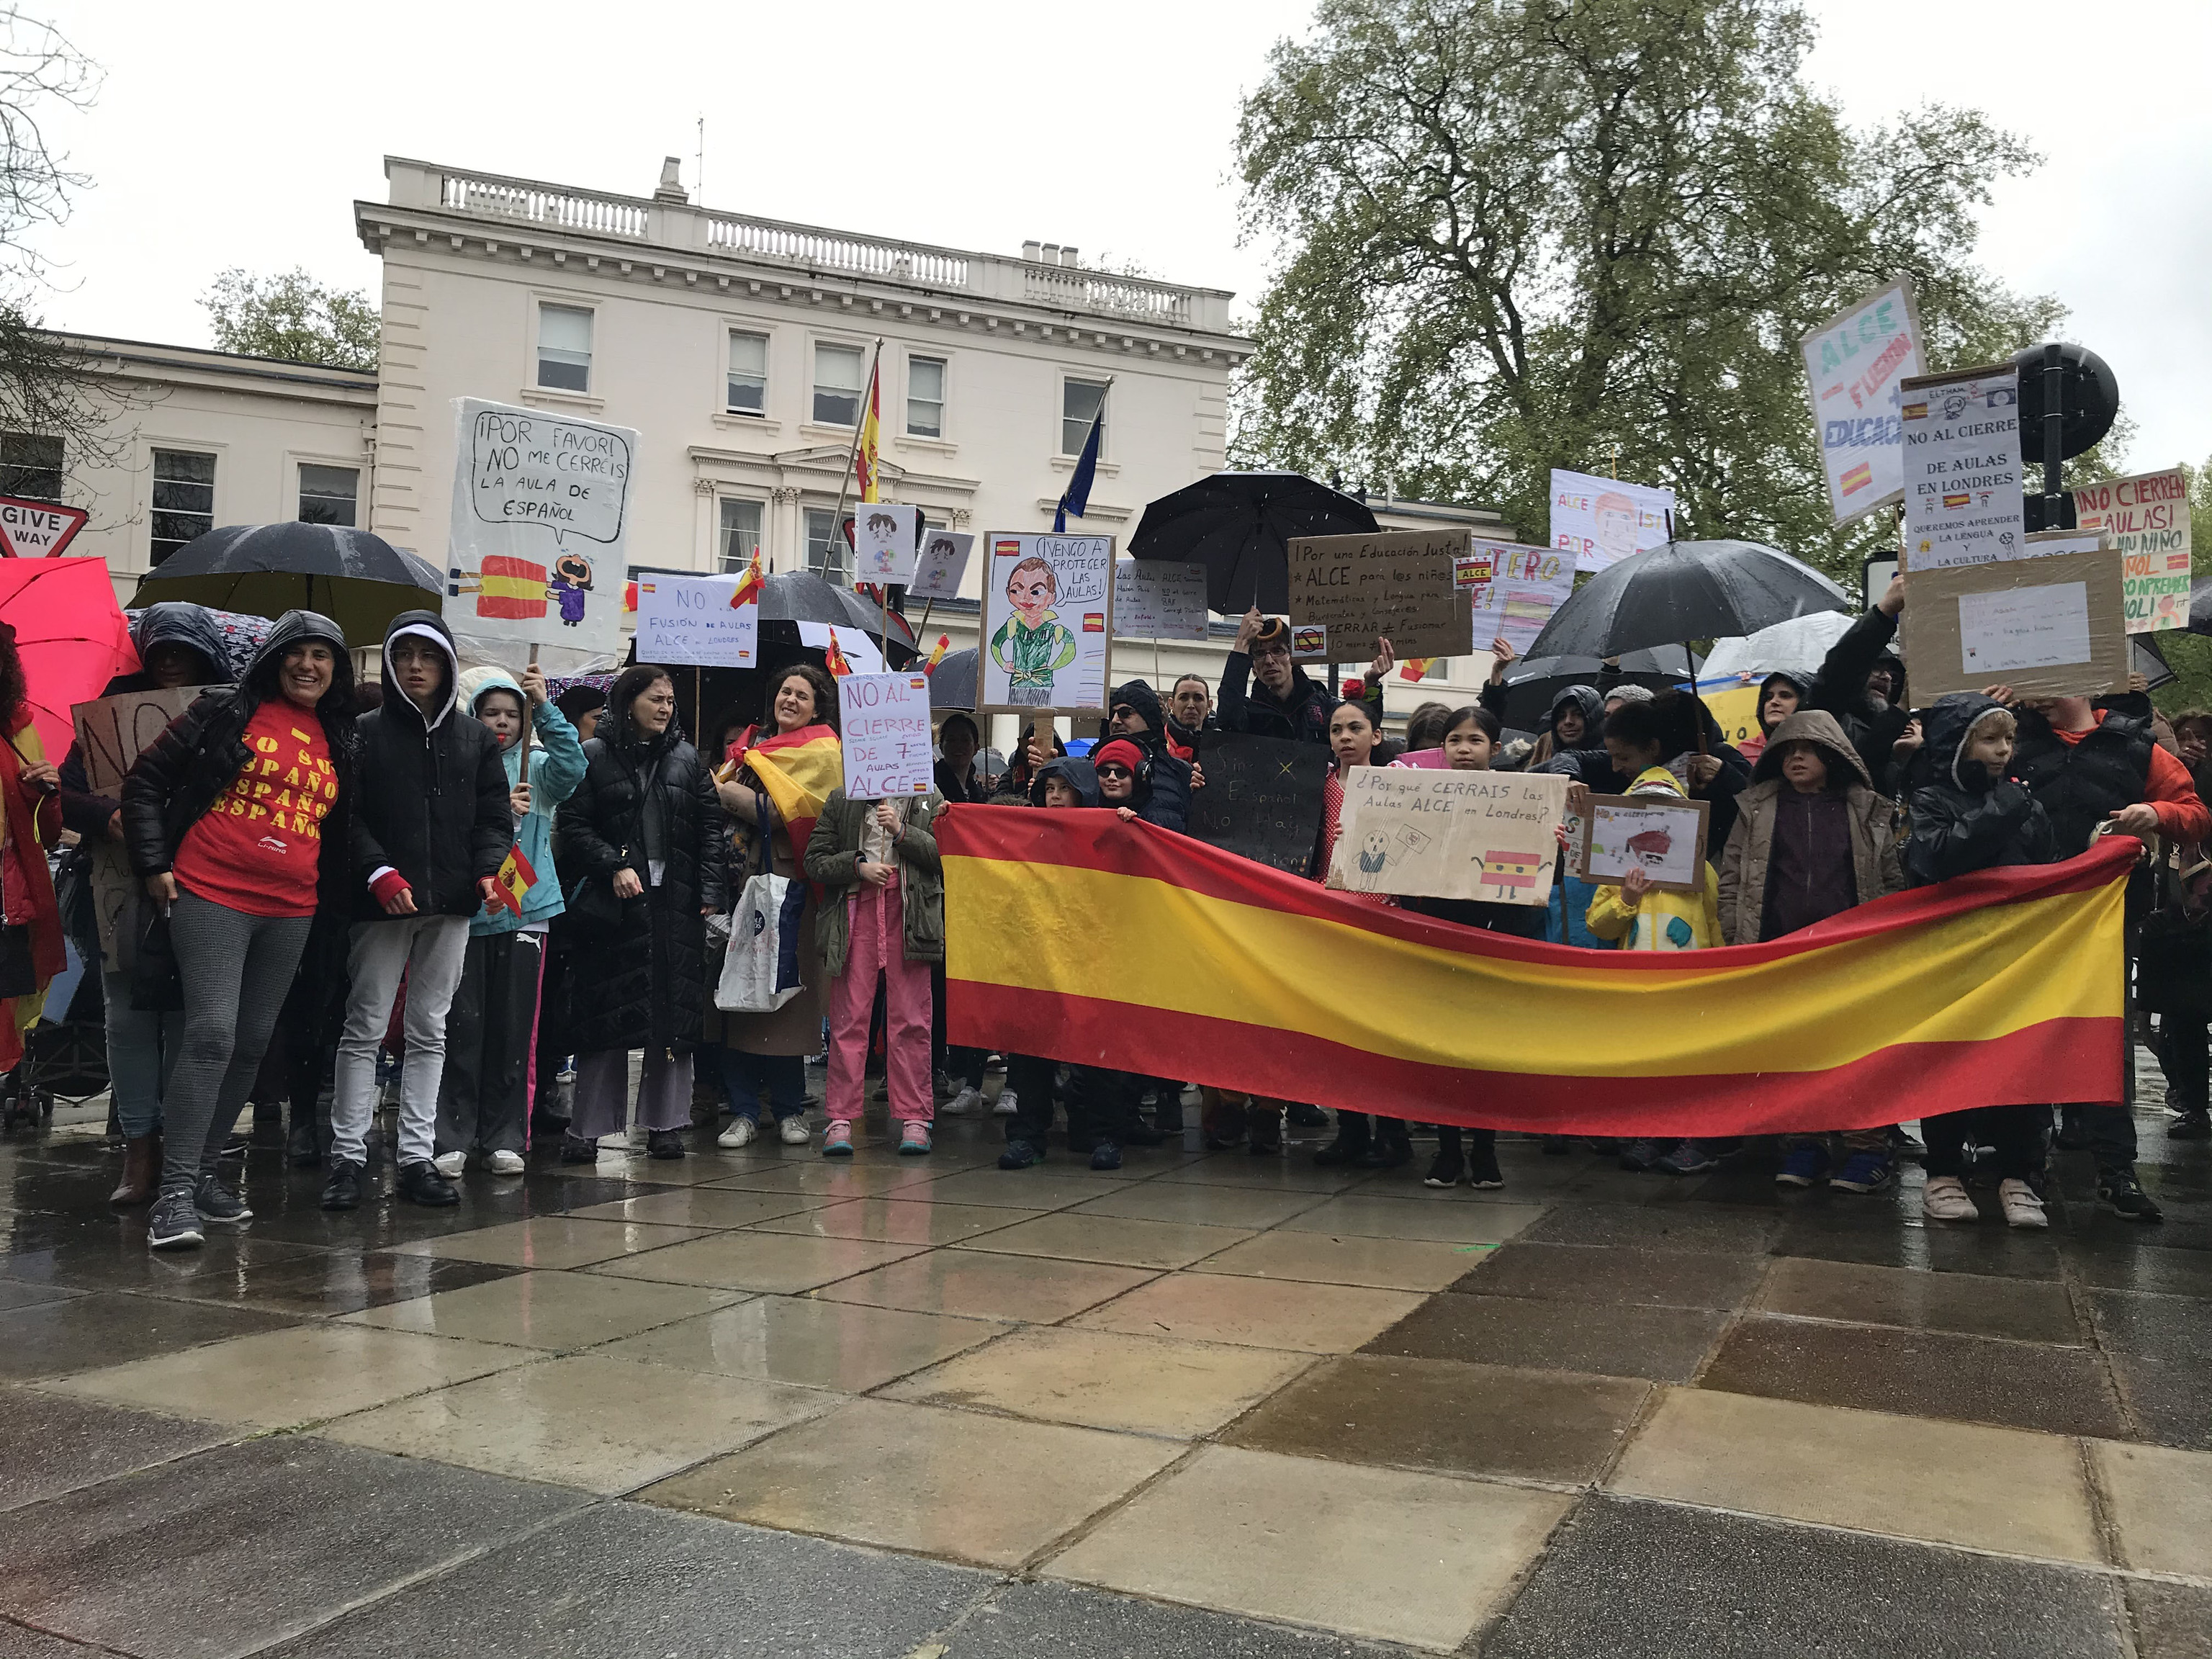 Padres y alumnos se manifiestan contra el cierre de aulas de español en Londres